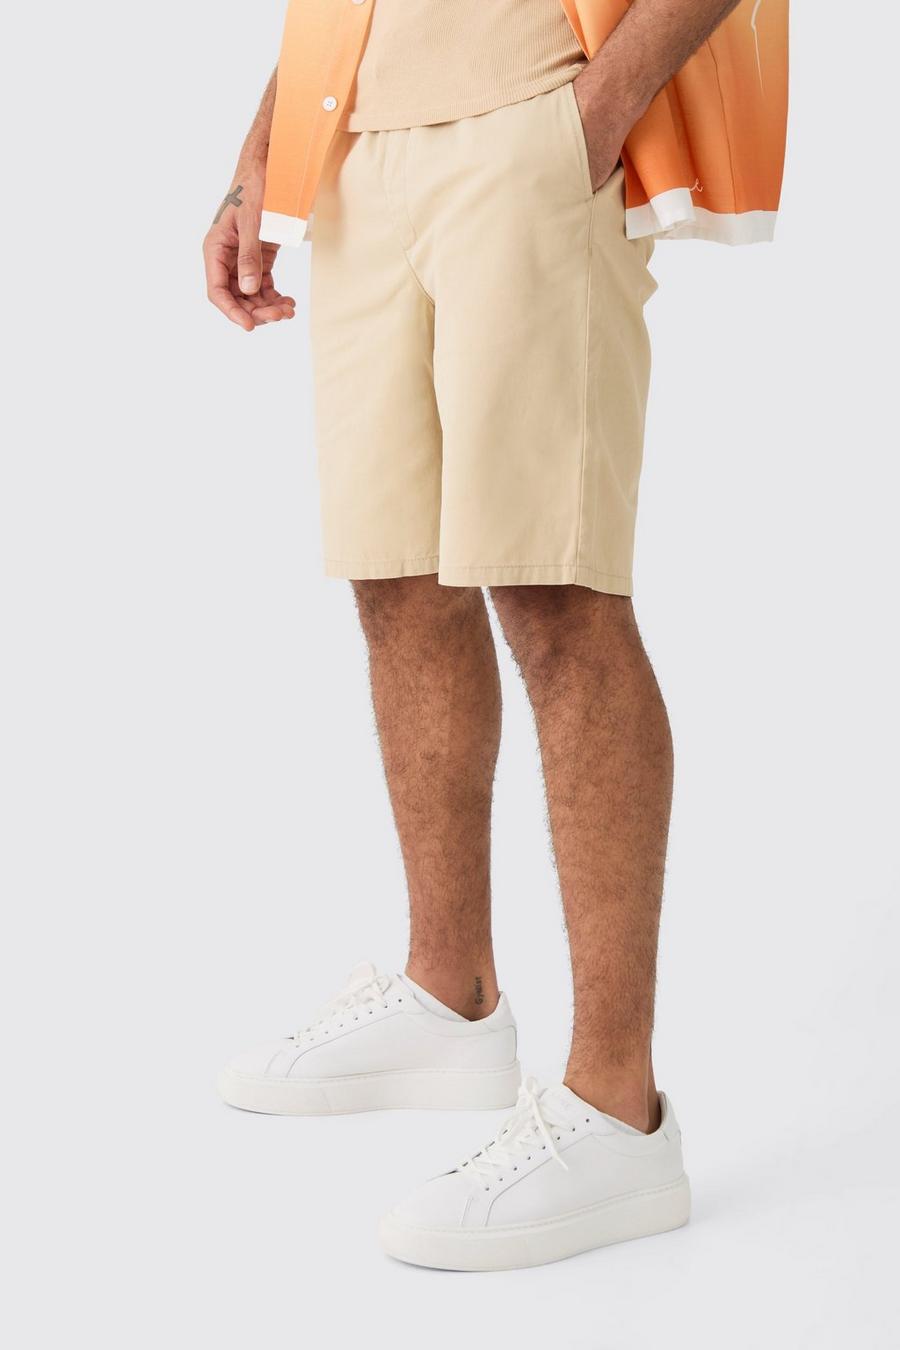 Lockere Shorts mit elastischem Bund, Stone